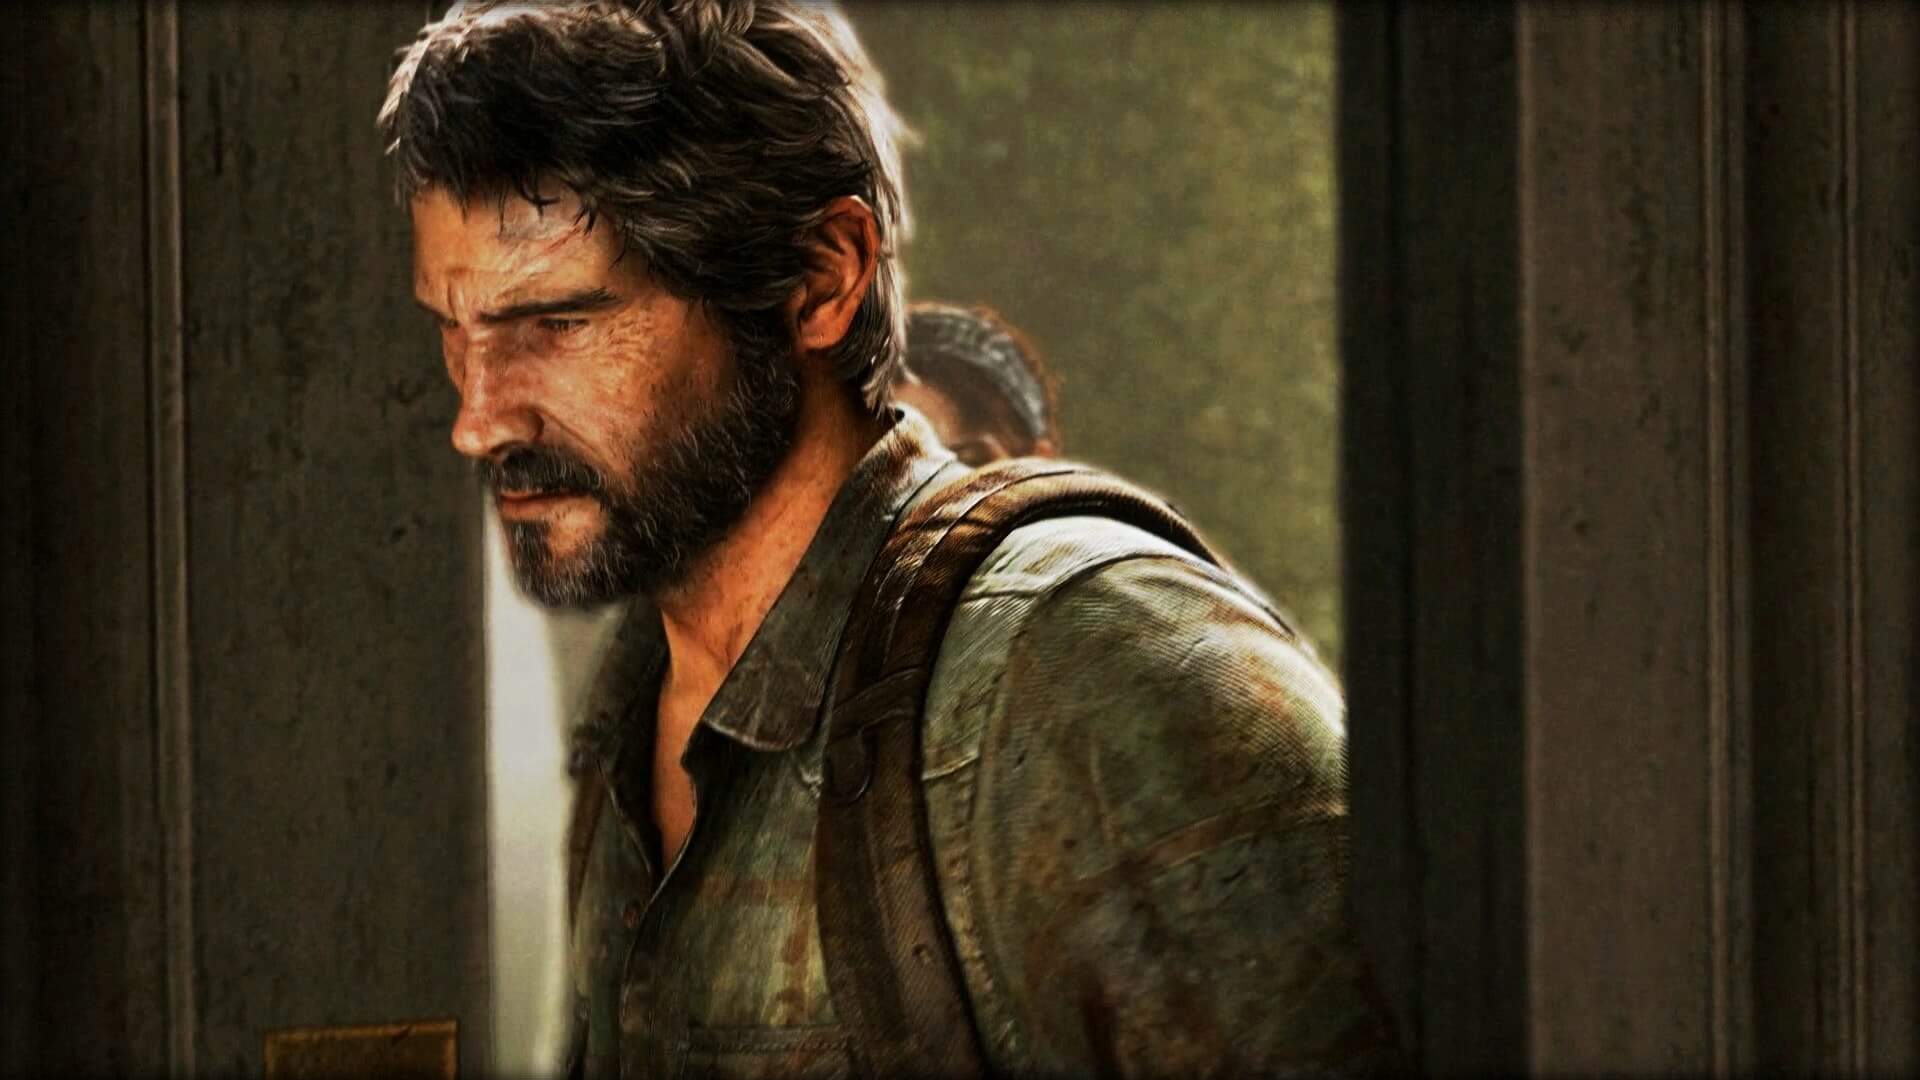 Actor de voz sobre de Joel en The Last of Us II, dice que se ve “increíble”